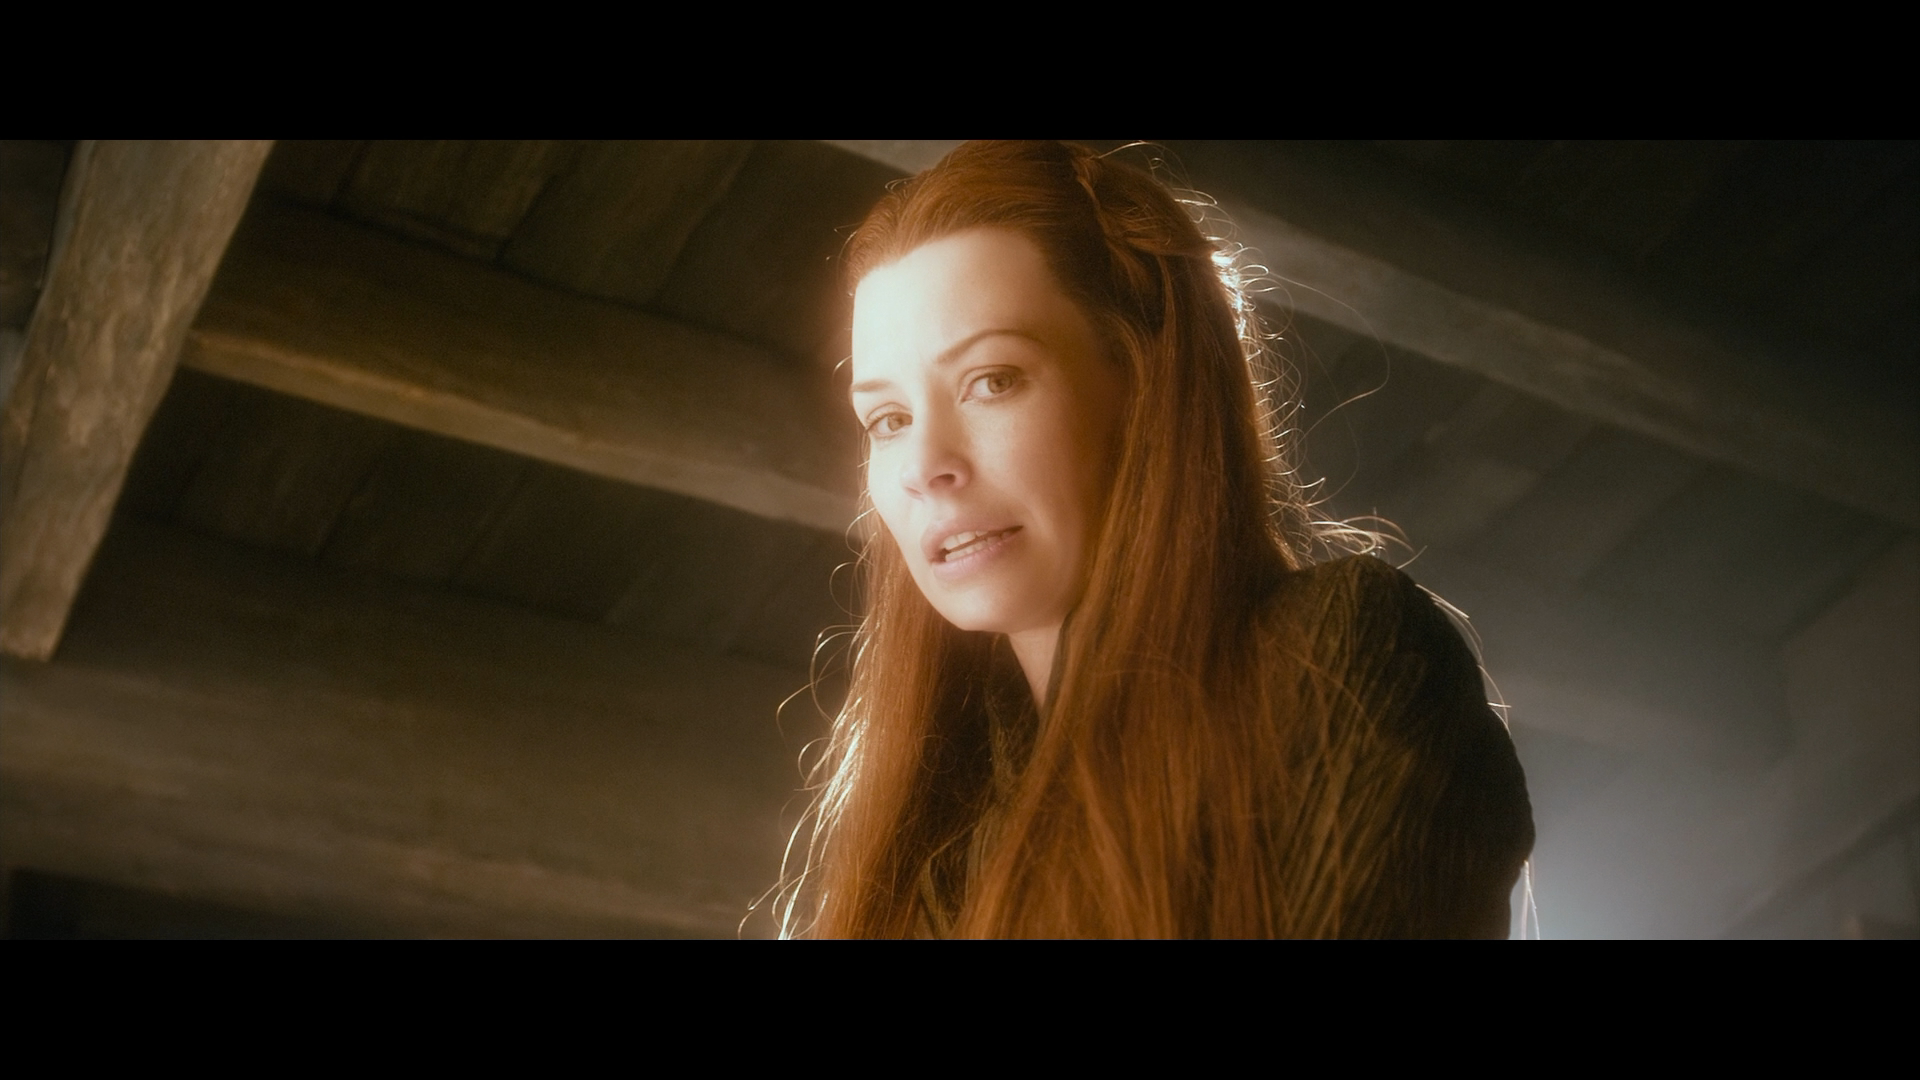 [霍比特人2].The.Hobbit.The.Desolation.of.Smaug.2013.EXTENDED.BluRay.1080p.AVC.DTS-HD.MA.7.1-Tay   41.01G- u2 n) A4 b( T-25.png